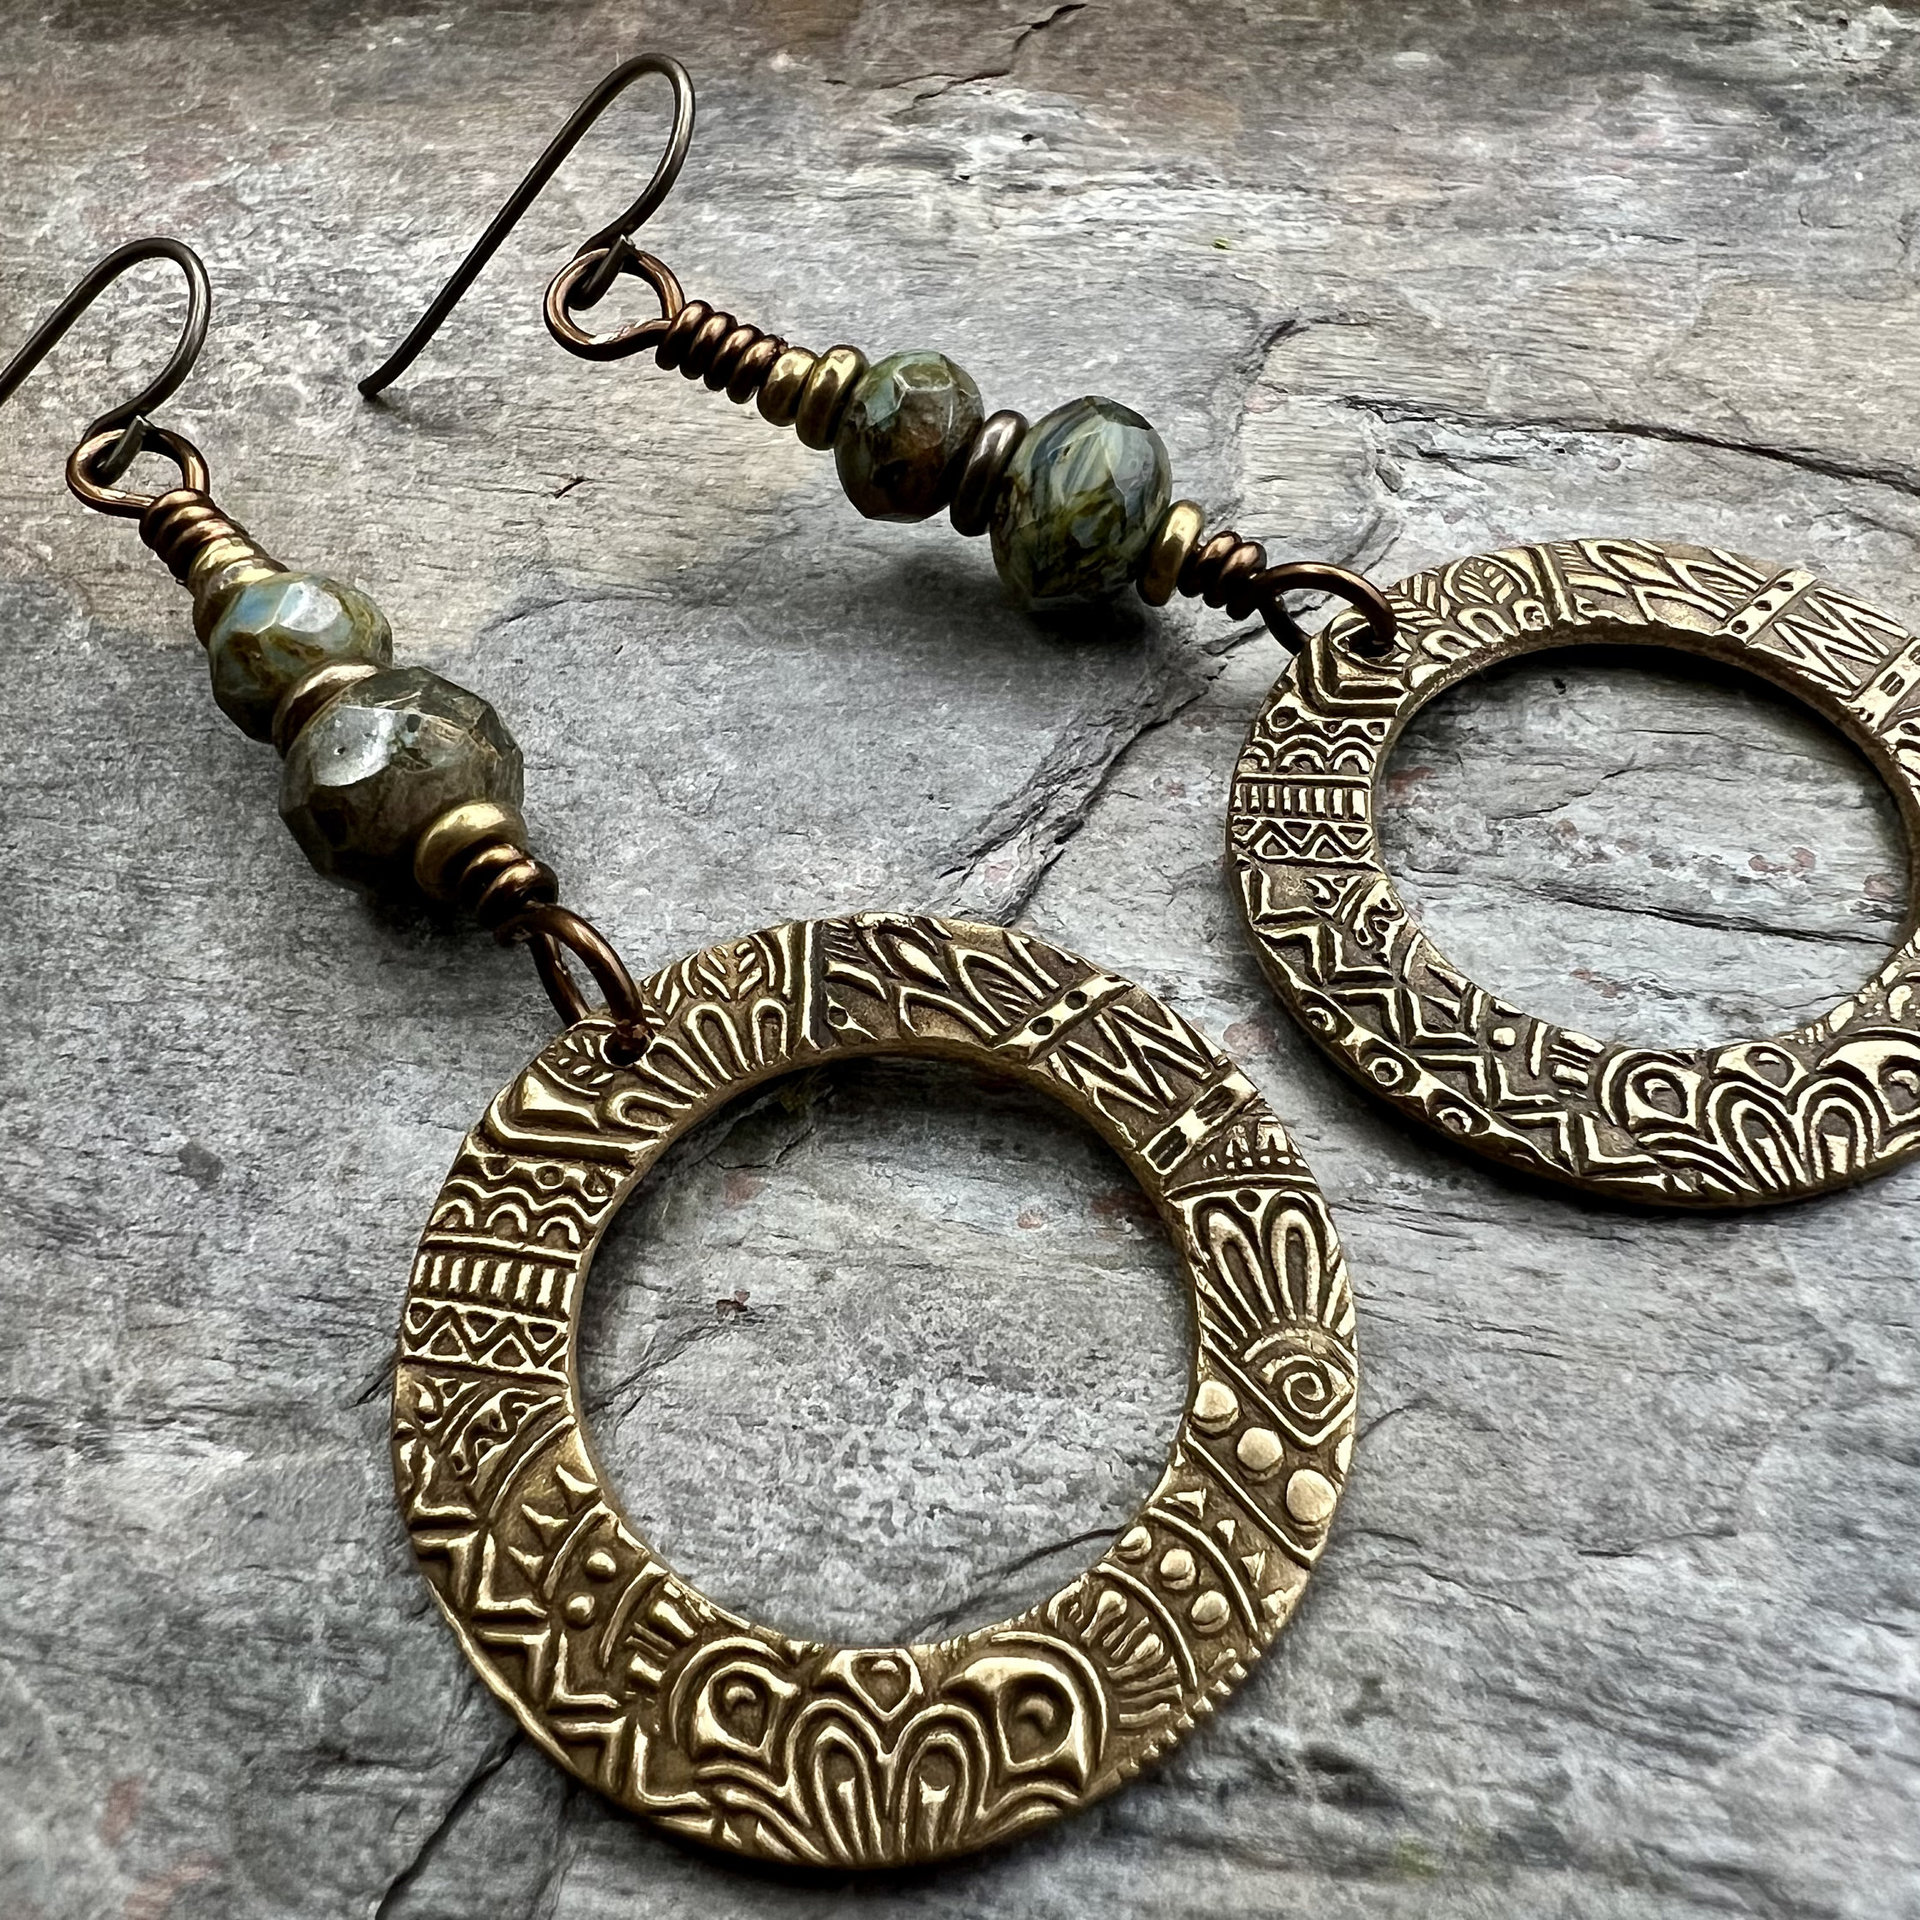 Bronze Hoop Earrings, Blue Green Czech Glass, Hypoallergenic Ear Wires, Earthy Boho Jewelry, Rustic, Tribal Textured, Dangle Drop Hoops